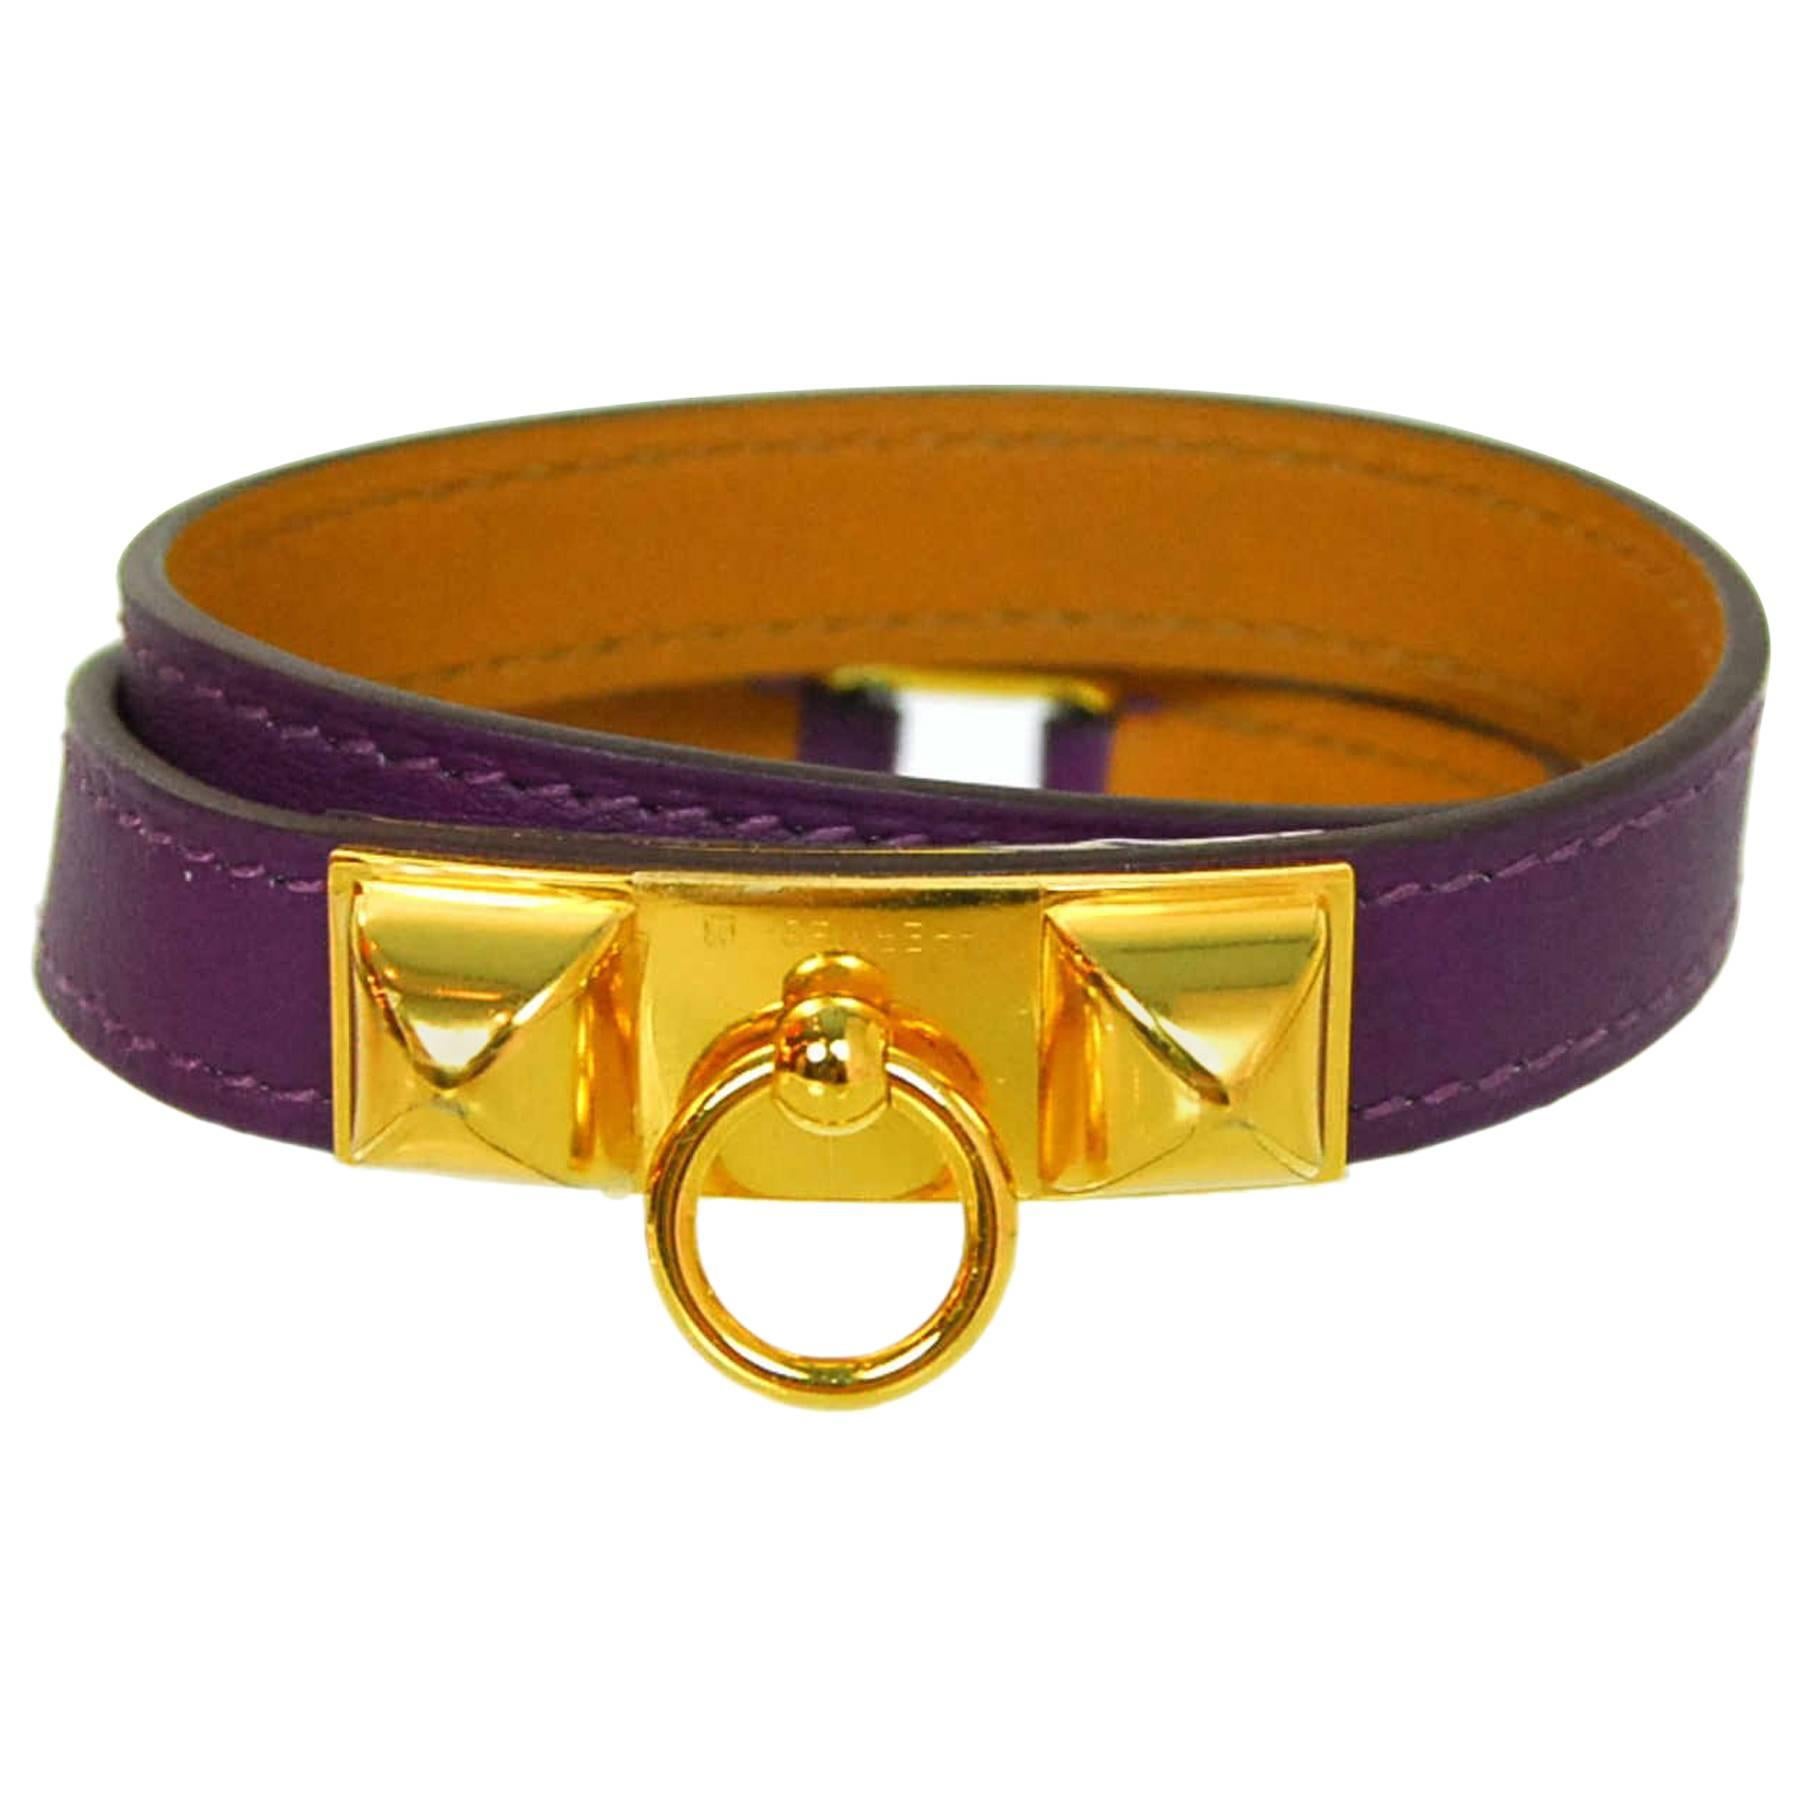 Hermès Purple and Goldtone Rivale Double Tour Wrap Bracelet Sz M NIB